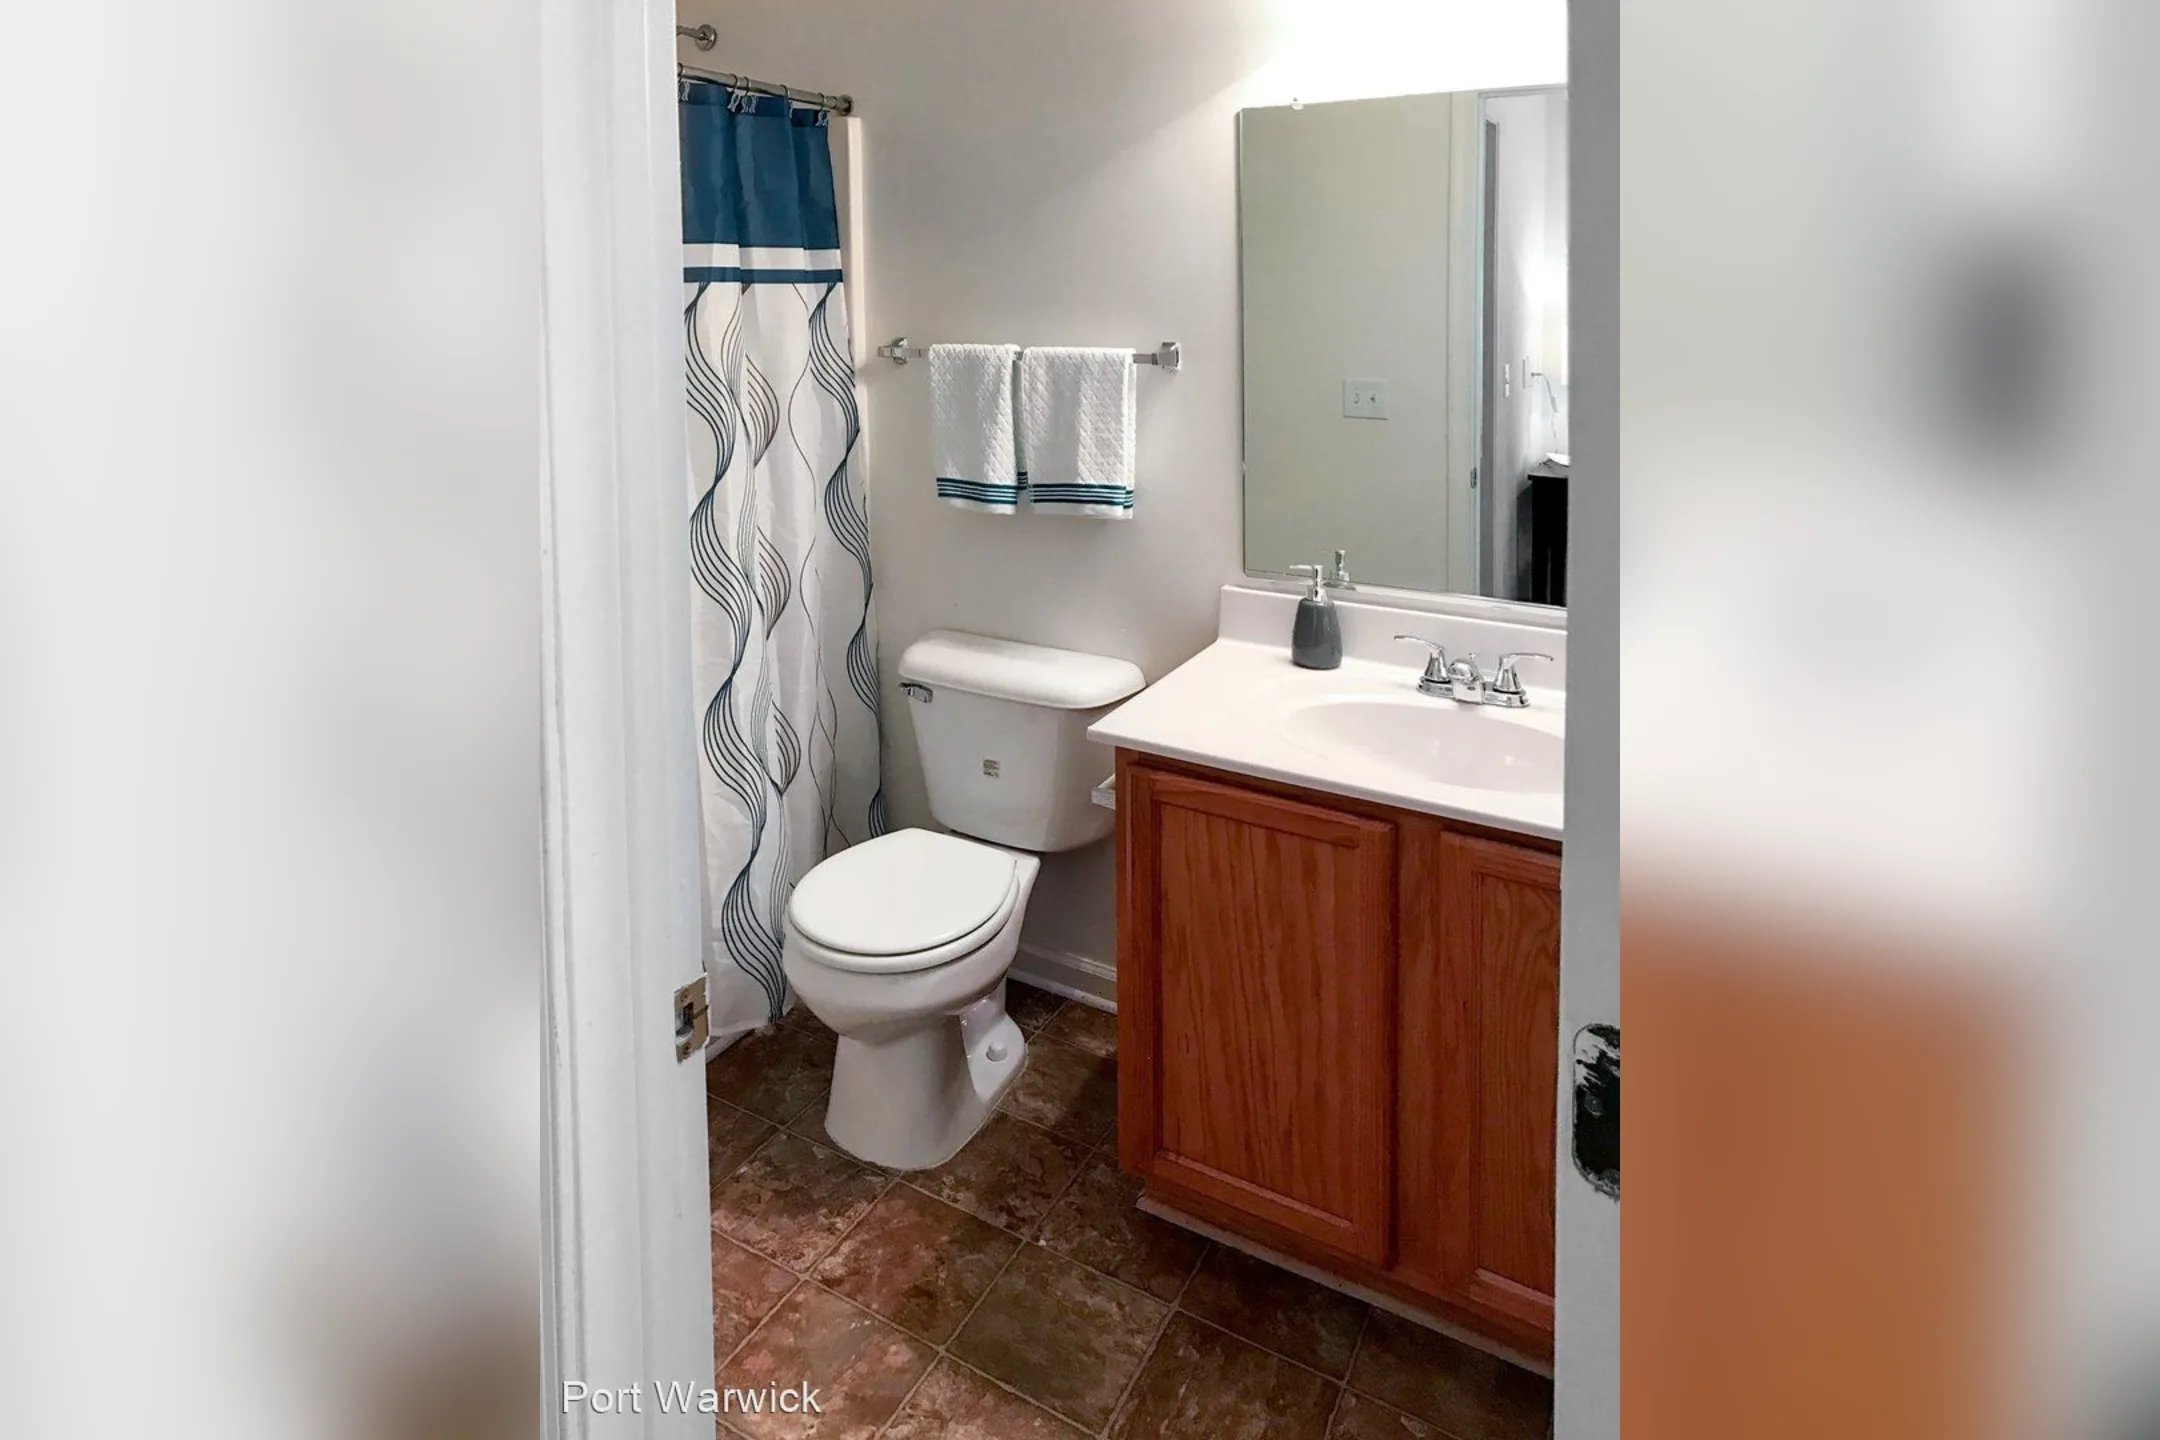 Bathroom - The Suites at Port Warwick - Newport News, VA